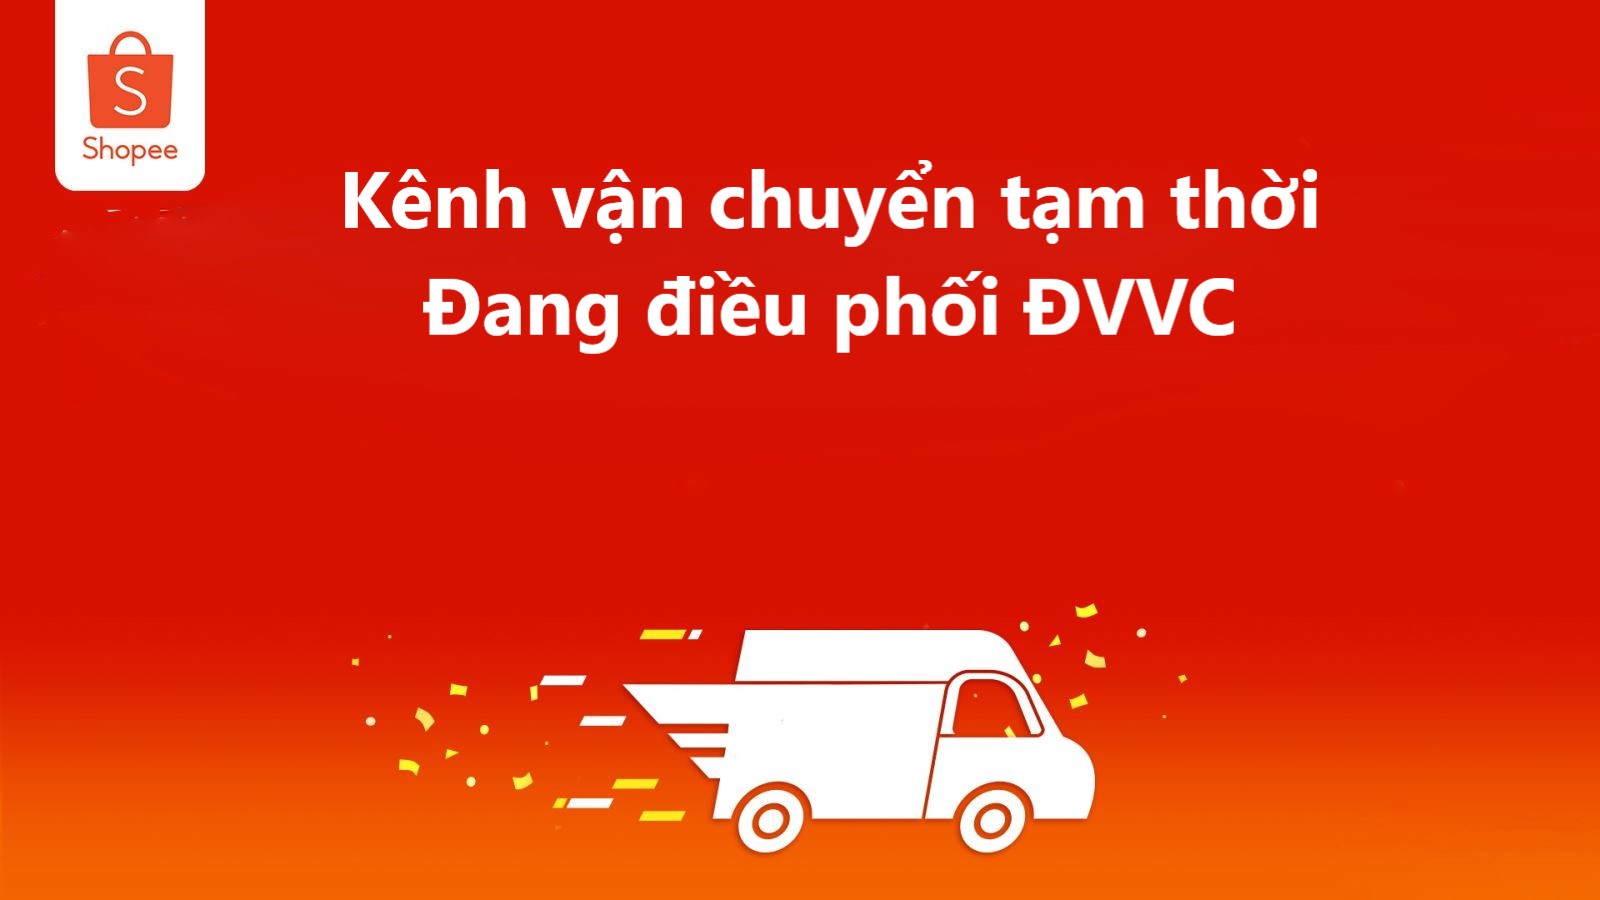 Kênh vận chuyển tạm thời “Đang điều phối ĐVVC” là gì?